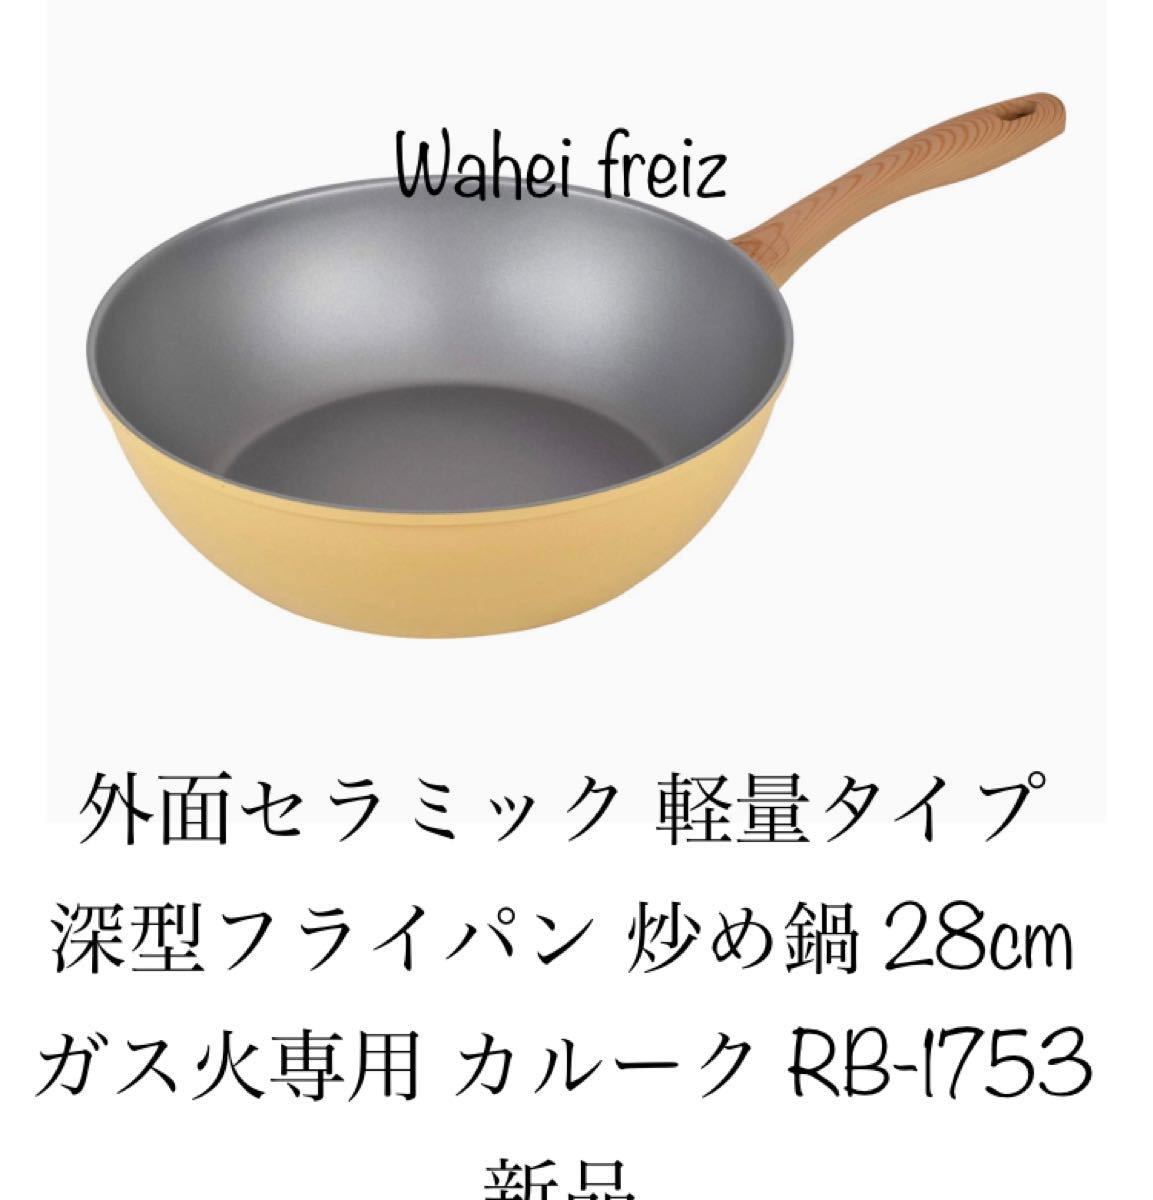 和平フレイズ(Waheifreiz) セラミック軽量深型フライパン 炒め鍋28cmガス火専用 カルーク新品